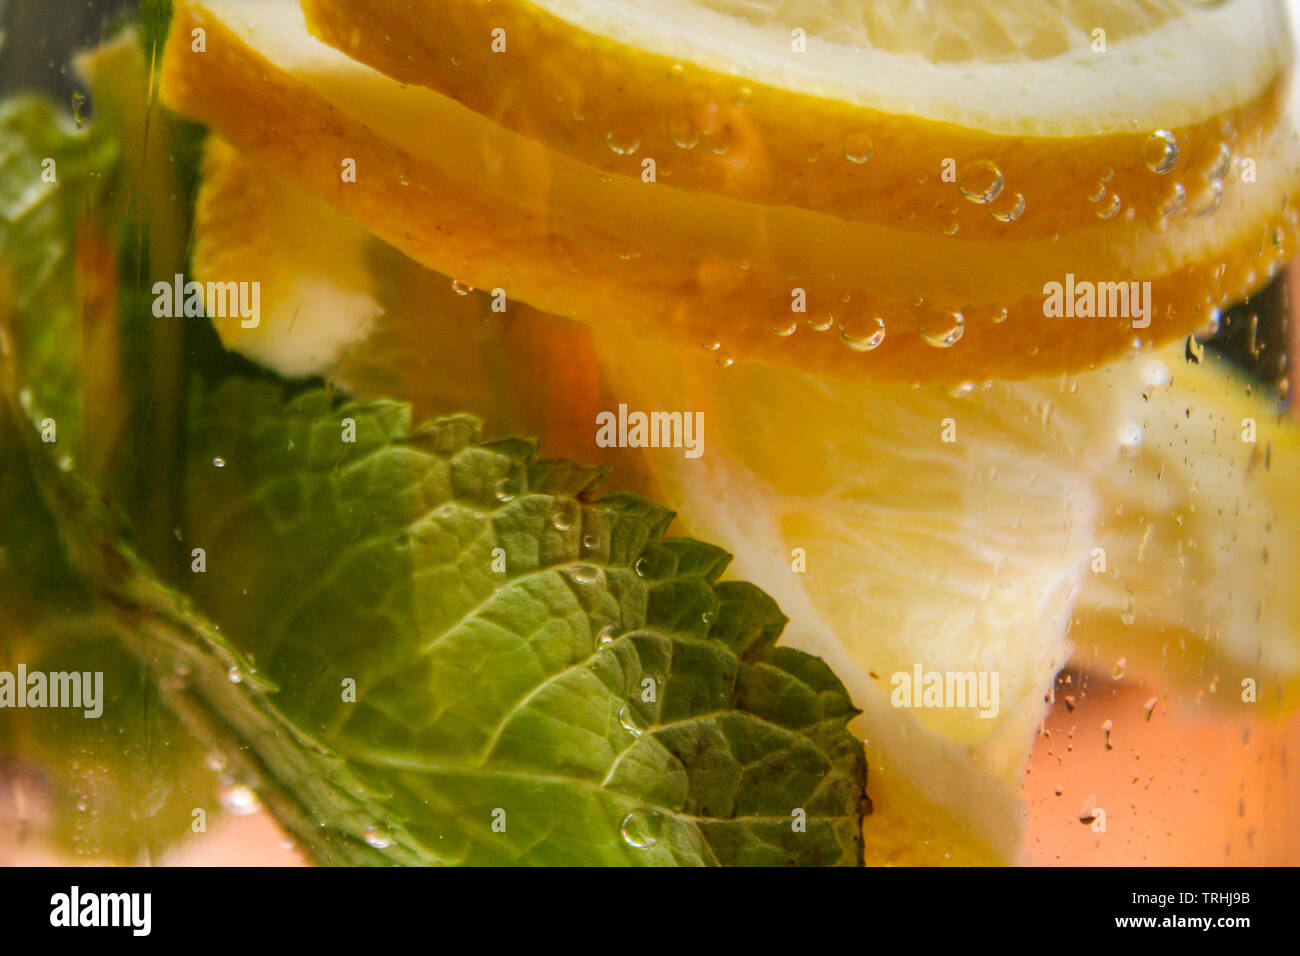 Le flacon en verre avec de l'eau fraîche, de citron et de feuilles de menthe Banque D'Images